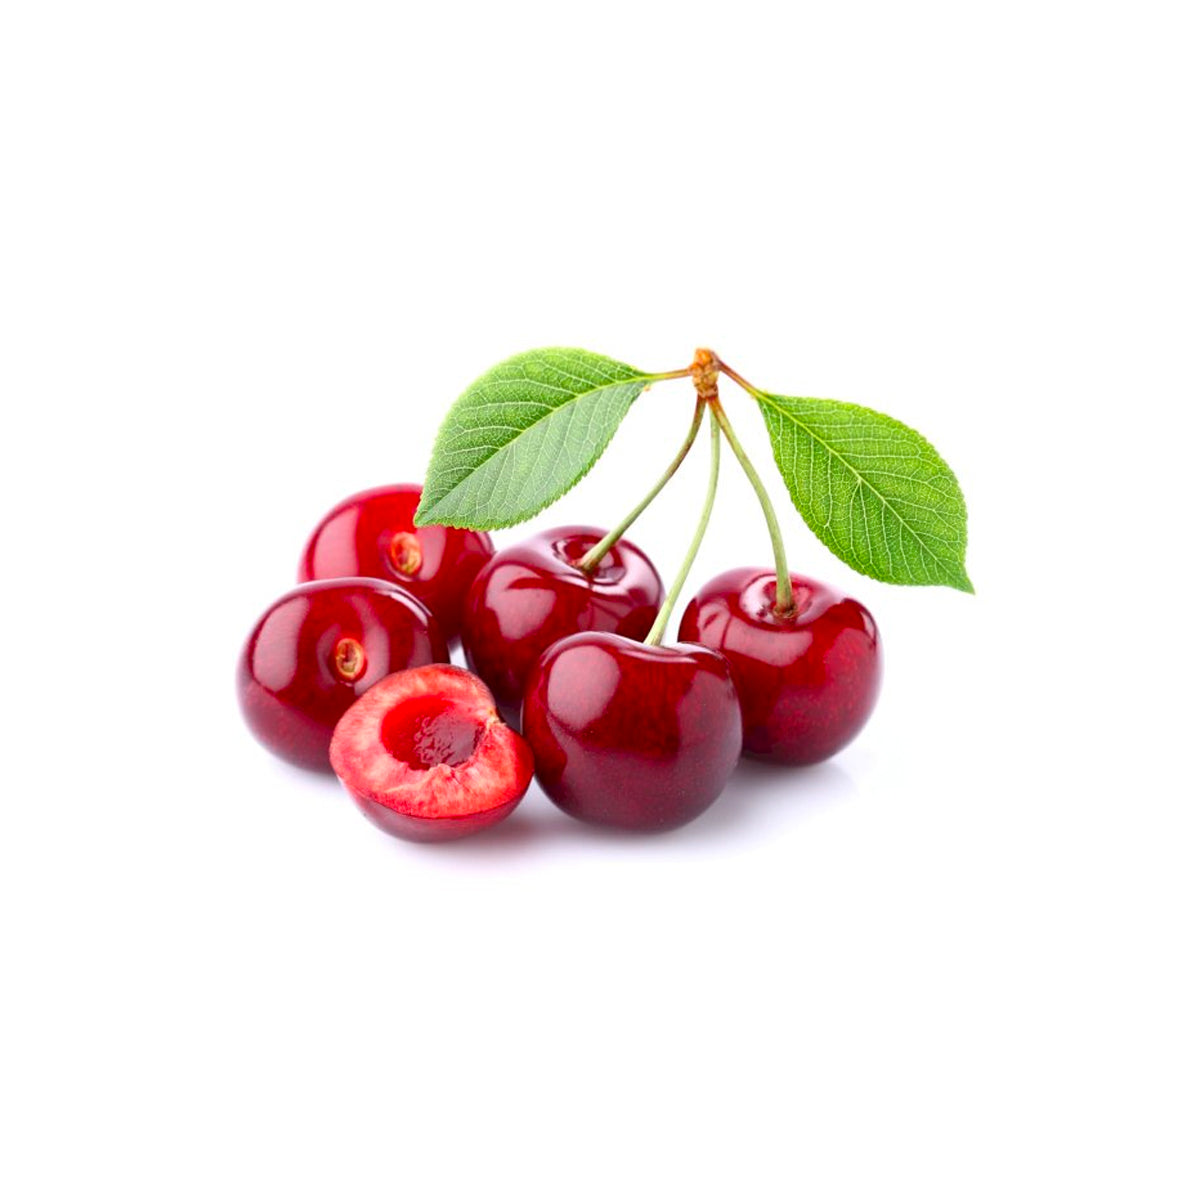 fresh Pakistani cherries